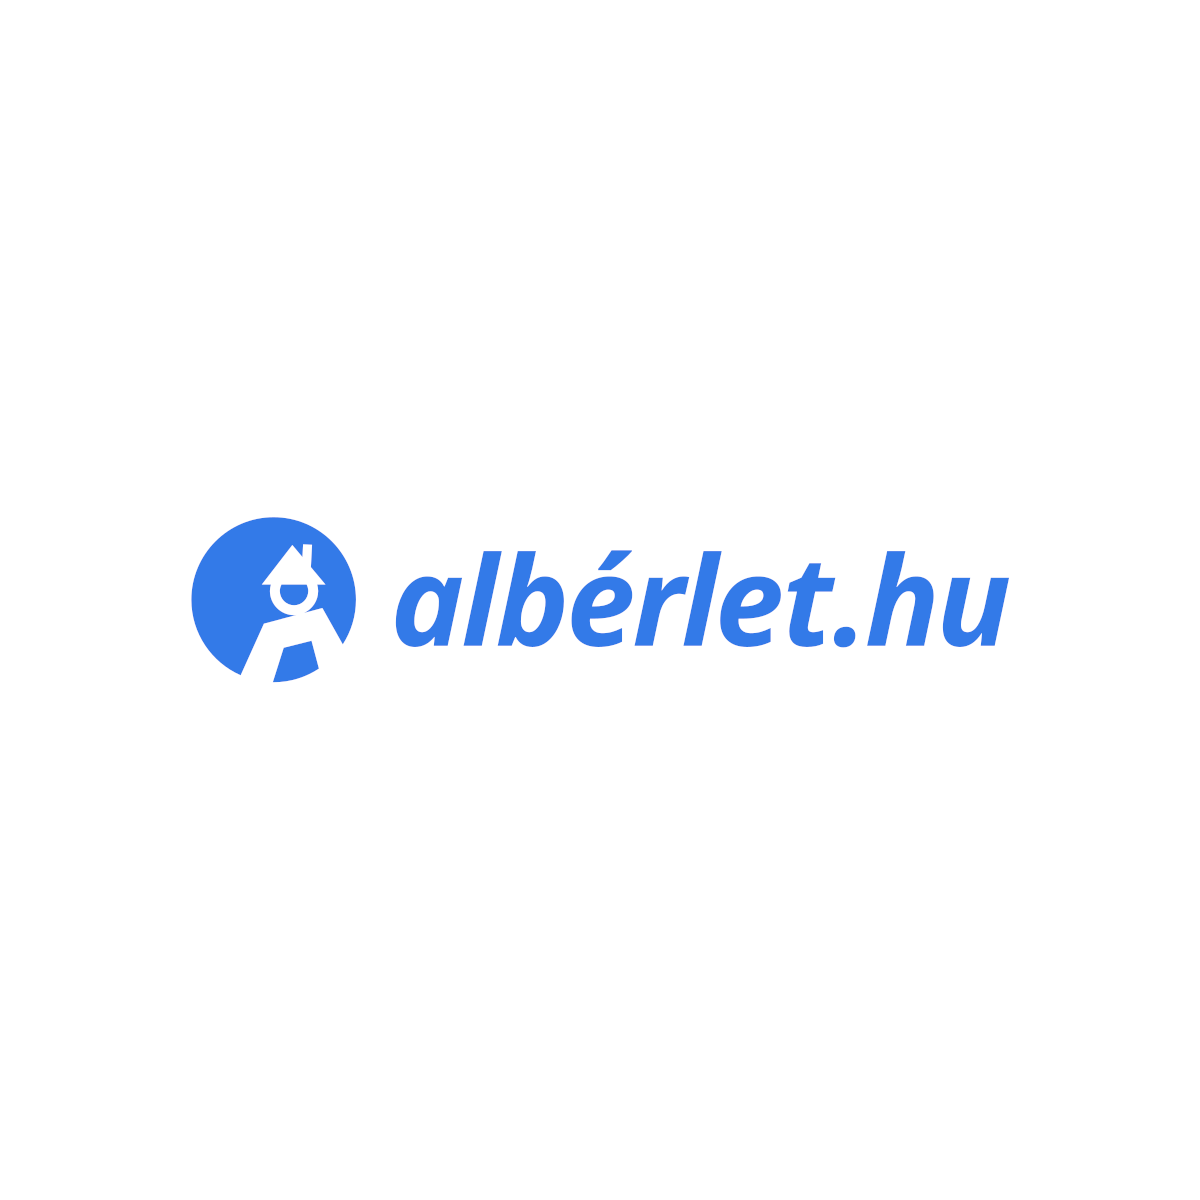 (c) Alberlet.hu